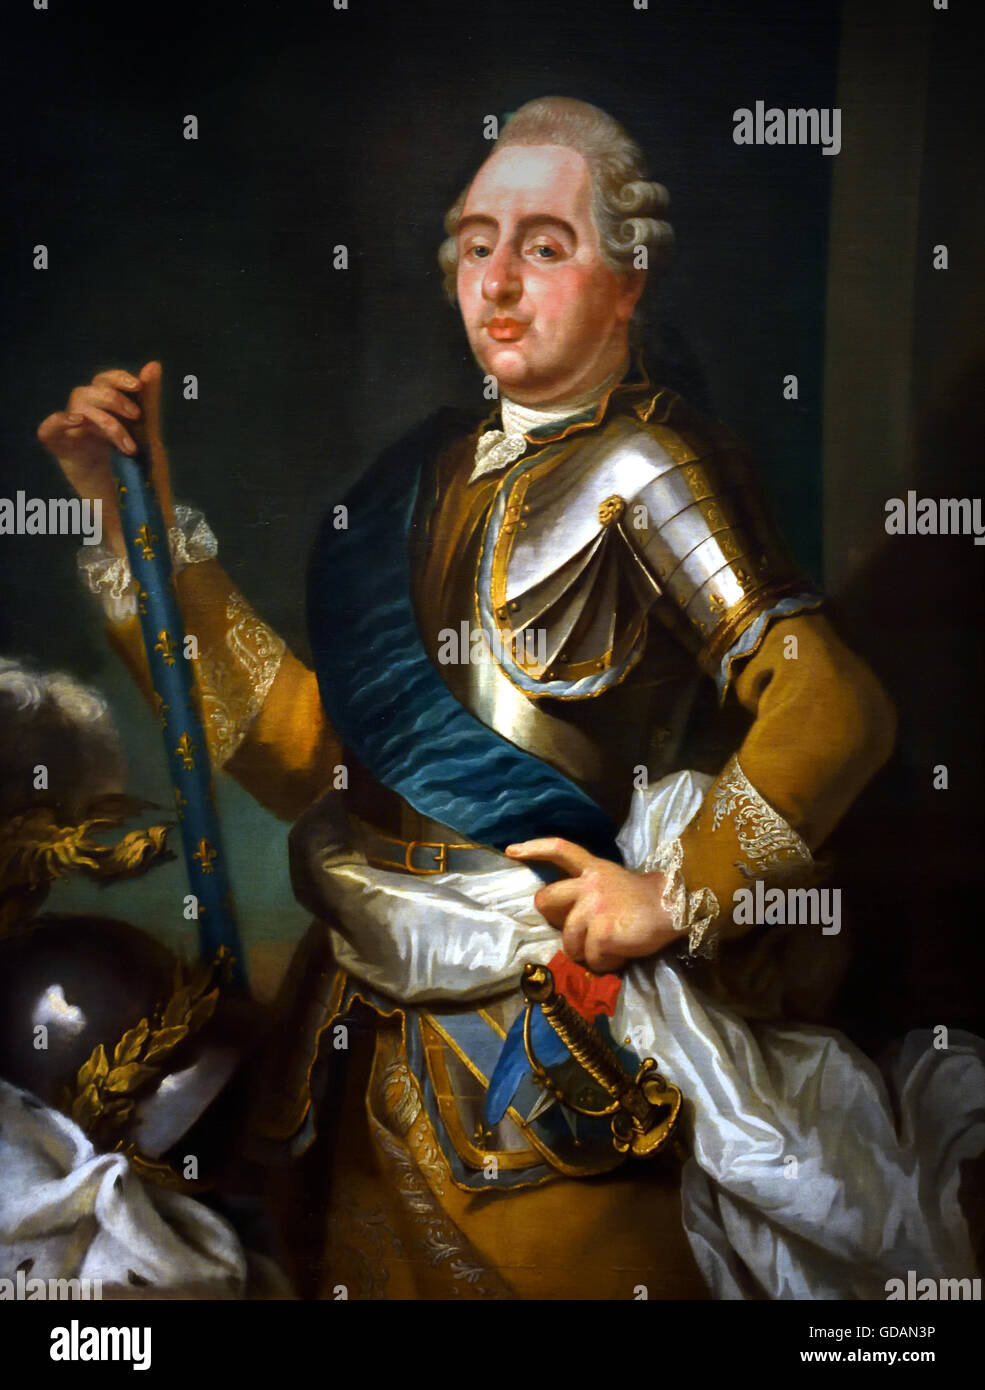 Louis XVI König von Frankreich 1774-1792 mit Kommandostab, der weiße Schärpe der Bourbonen und die Stadt roten und blauen Farben von Paris Frankreich Französisch Stockfoto